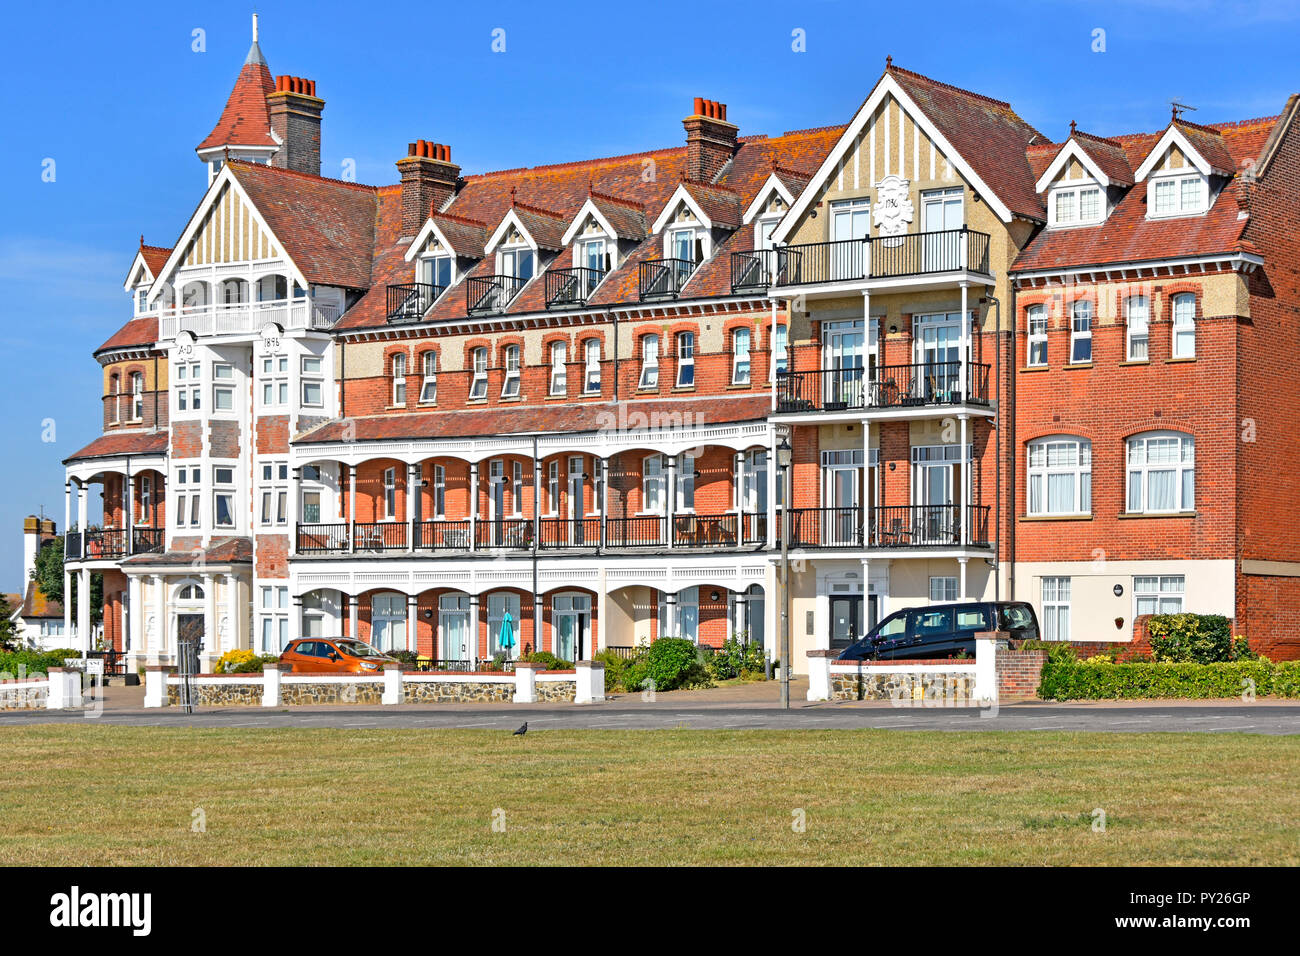 Bâtiment victorien a été le Grand Hotel Esplanade en front de mer sur Grand maintenant Appartements Hébergement en bord de mer maison de vacances resort sur Frinton and Sea Essex UK Banque D'Images